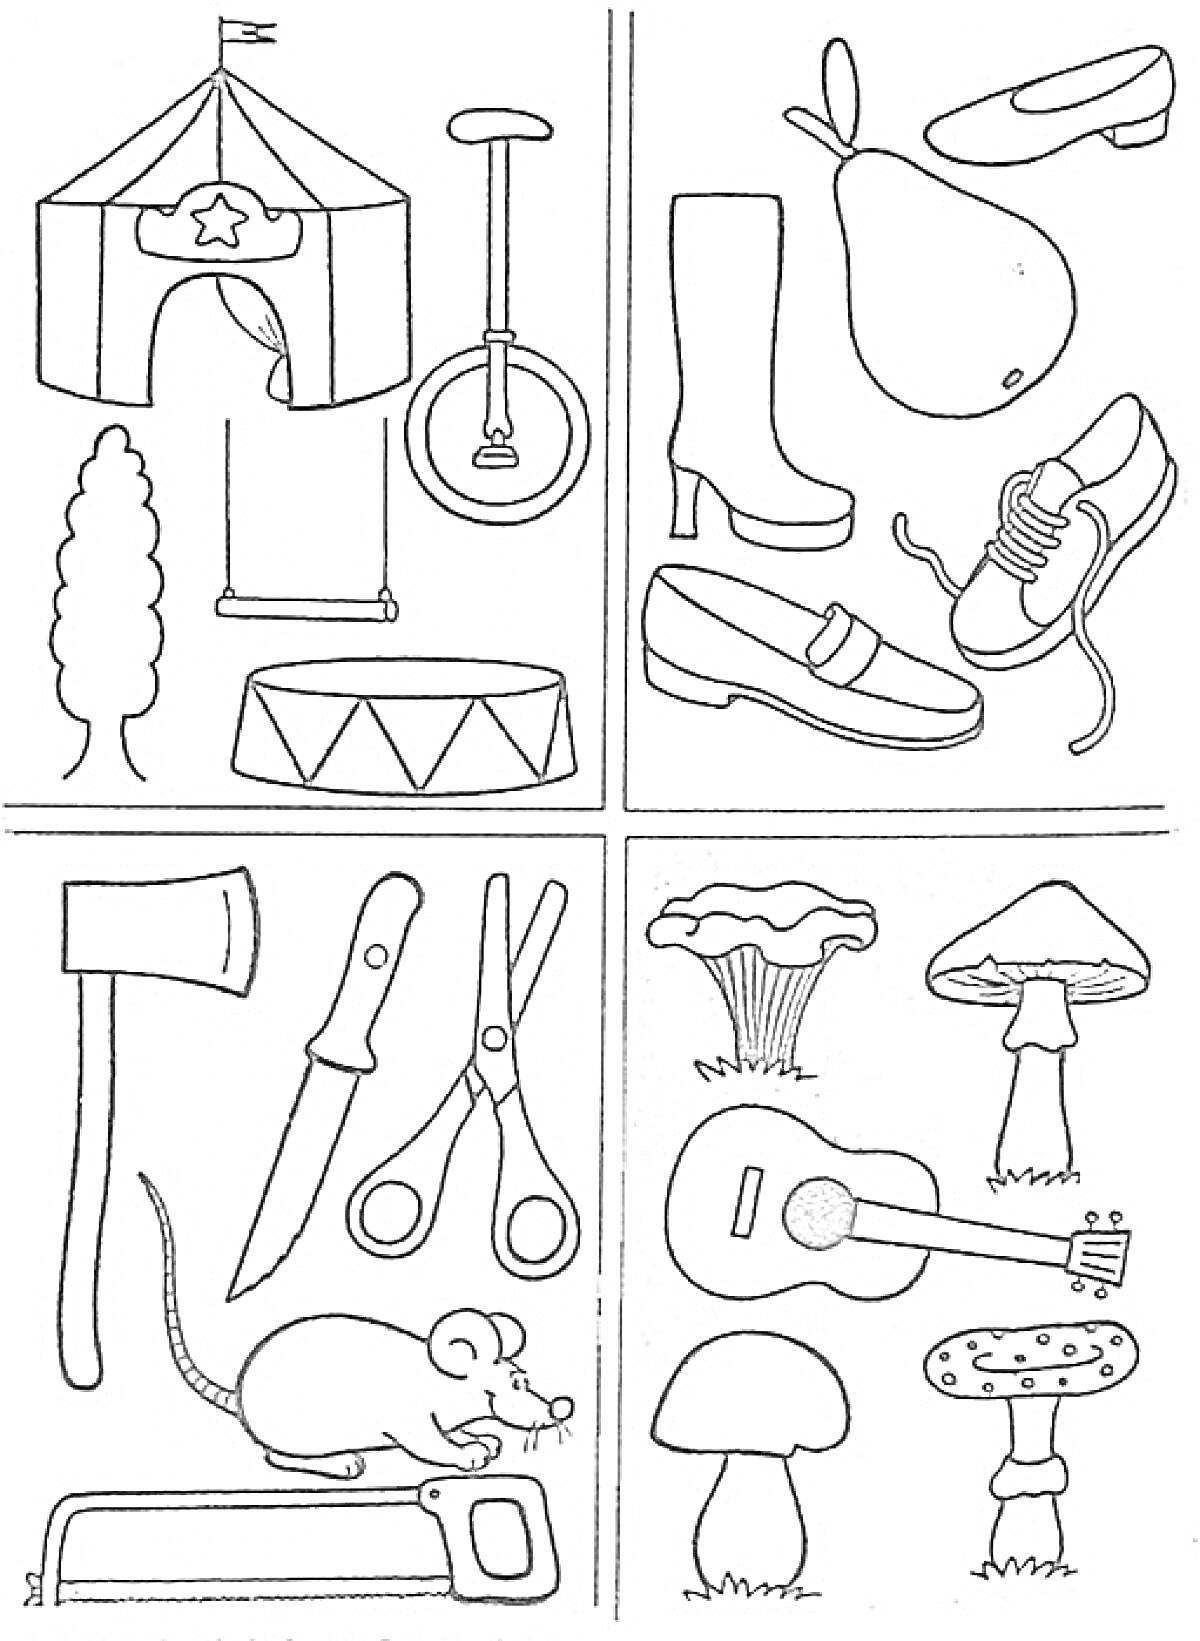 Цирк, обувь и фрукты, инструменты, грибы и музыкальные инструменты